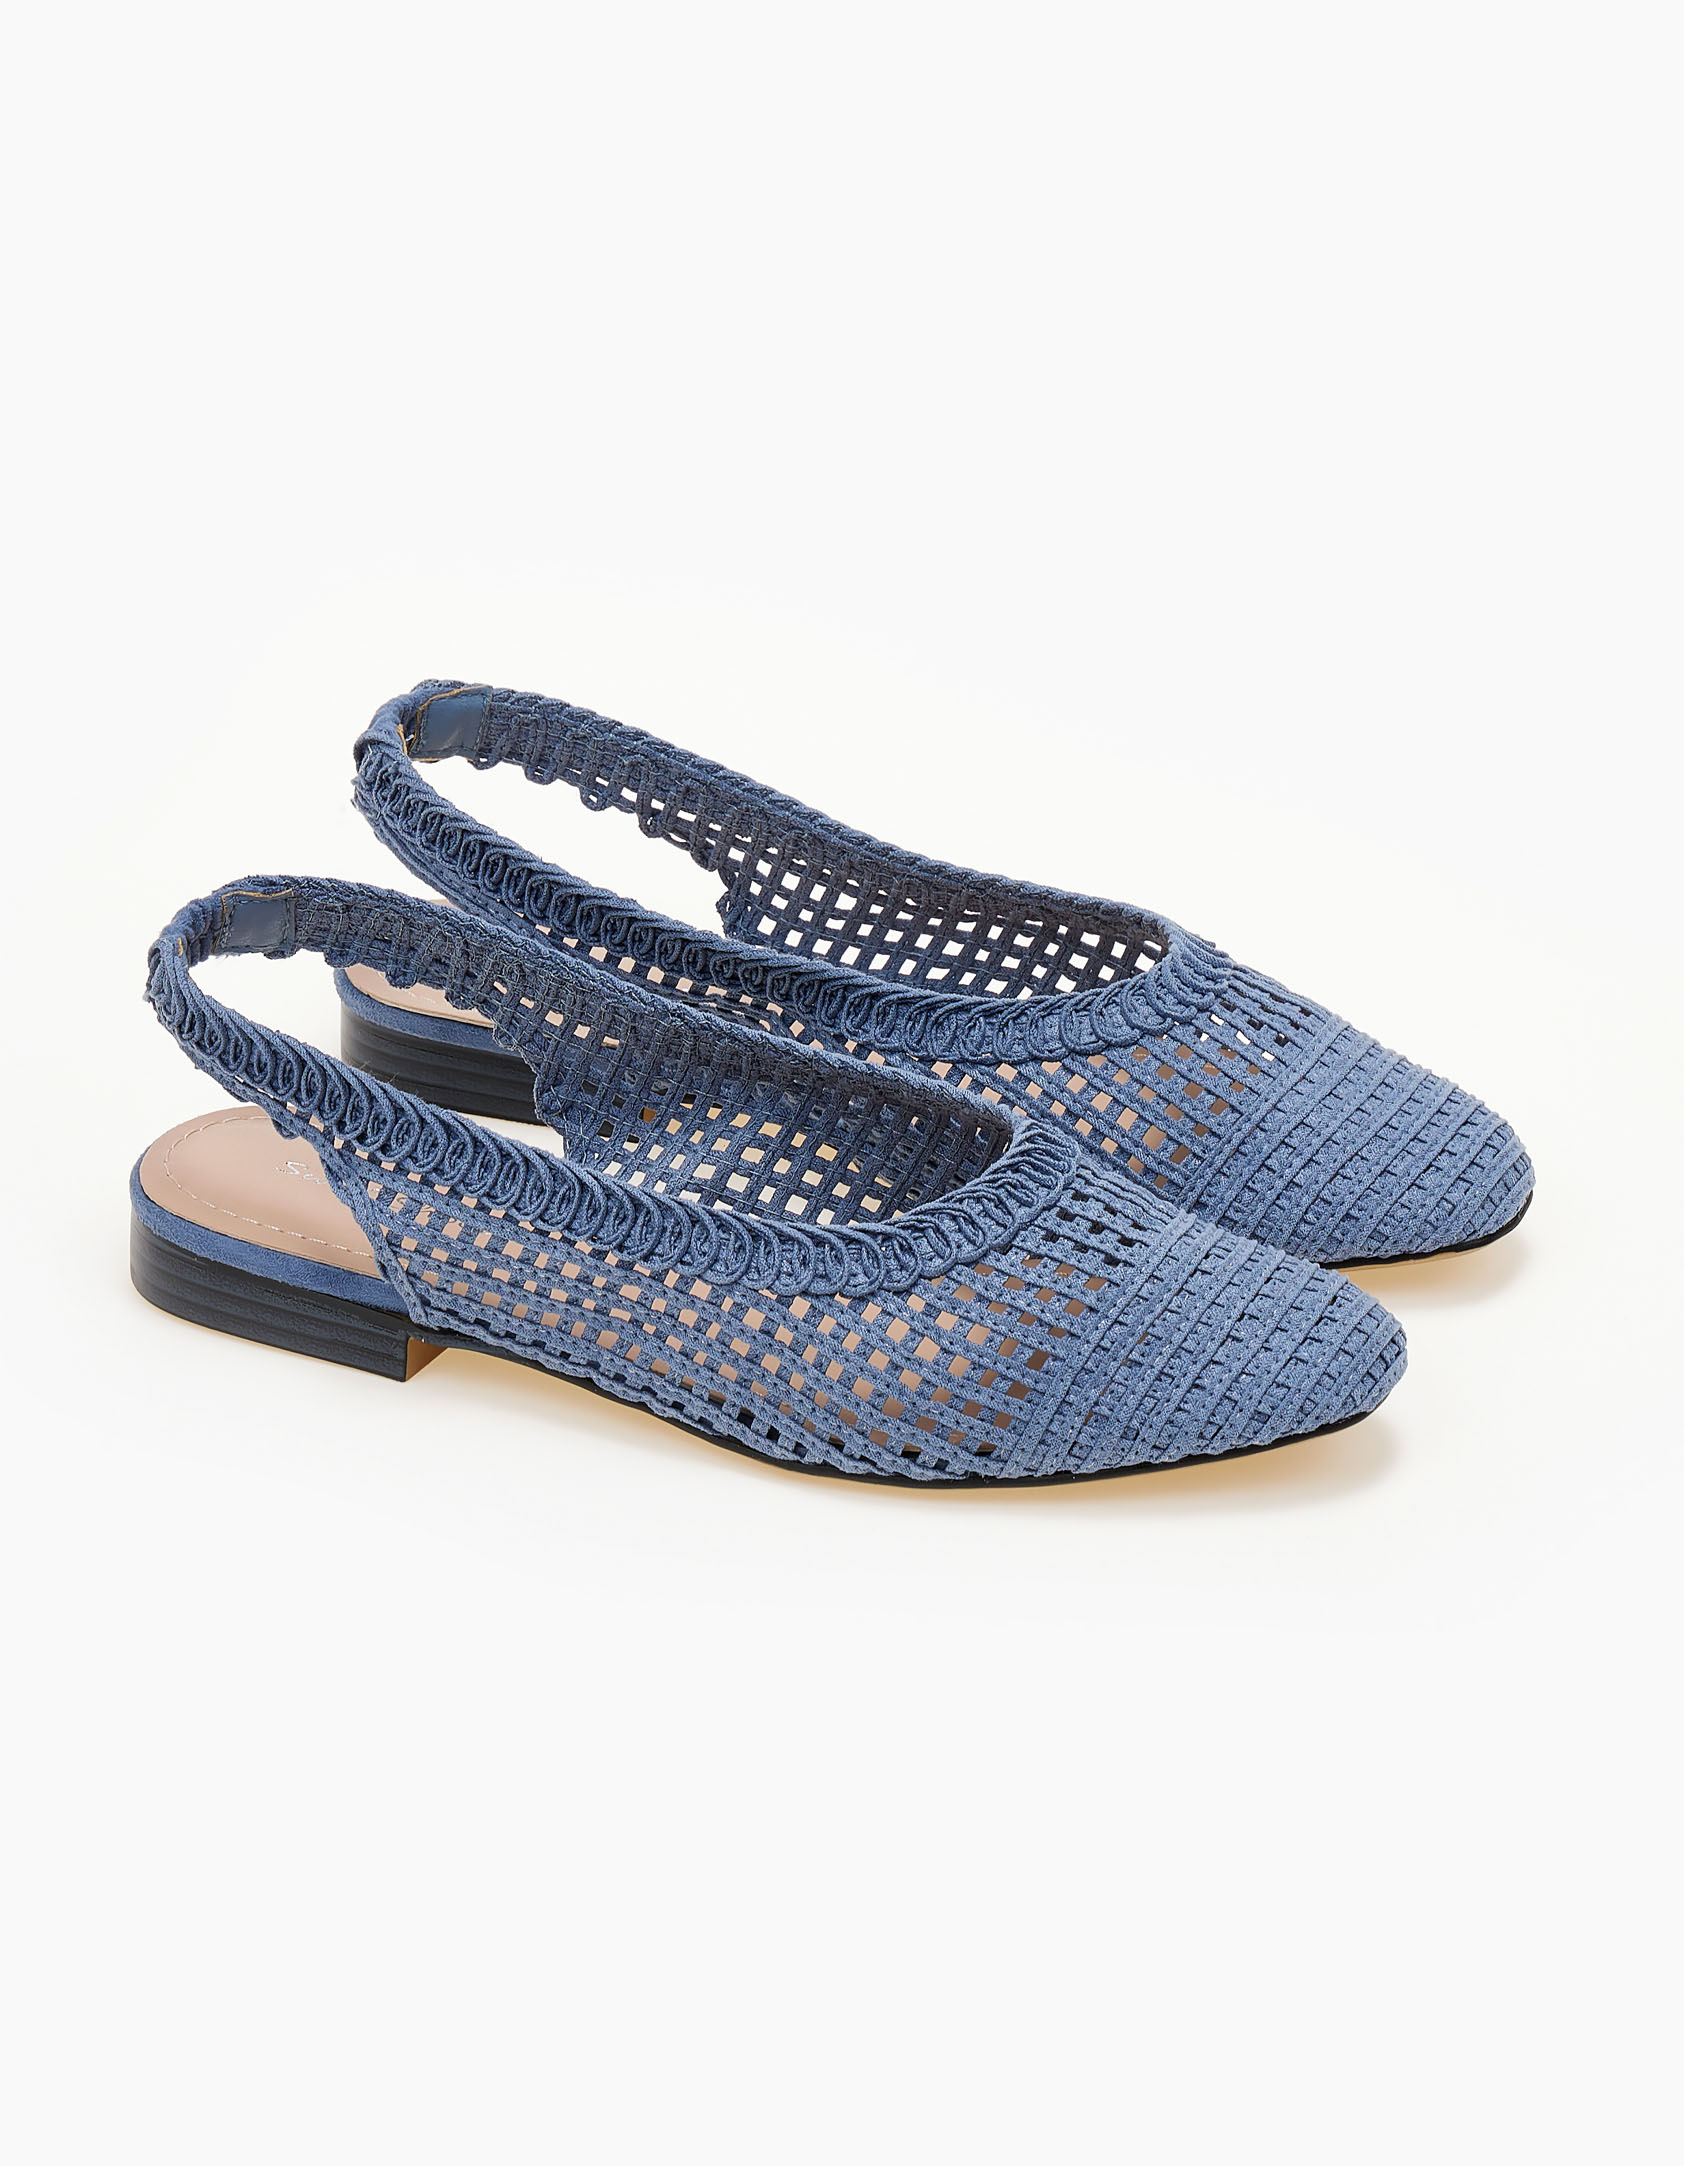 Παπούτσια > Μπαλαρίνες Εξώφτερνες γόβες με πλεκτό σχέδιο - Μπλε